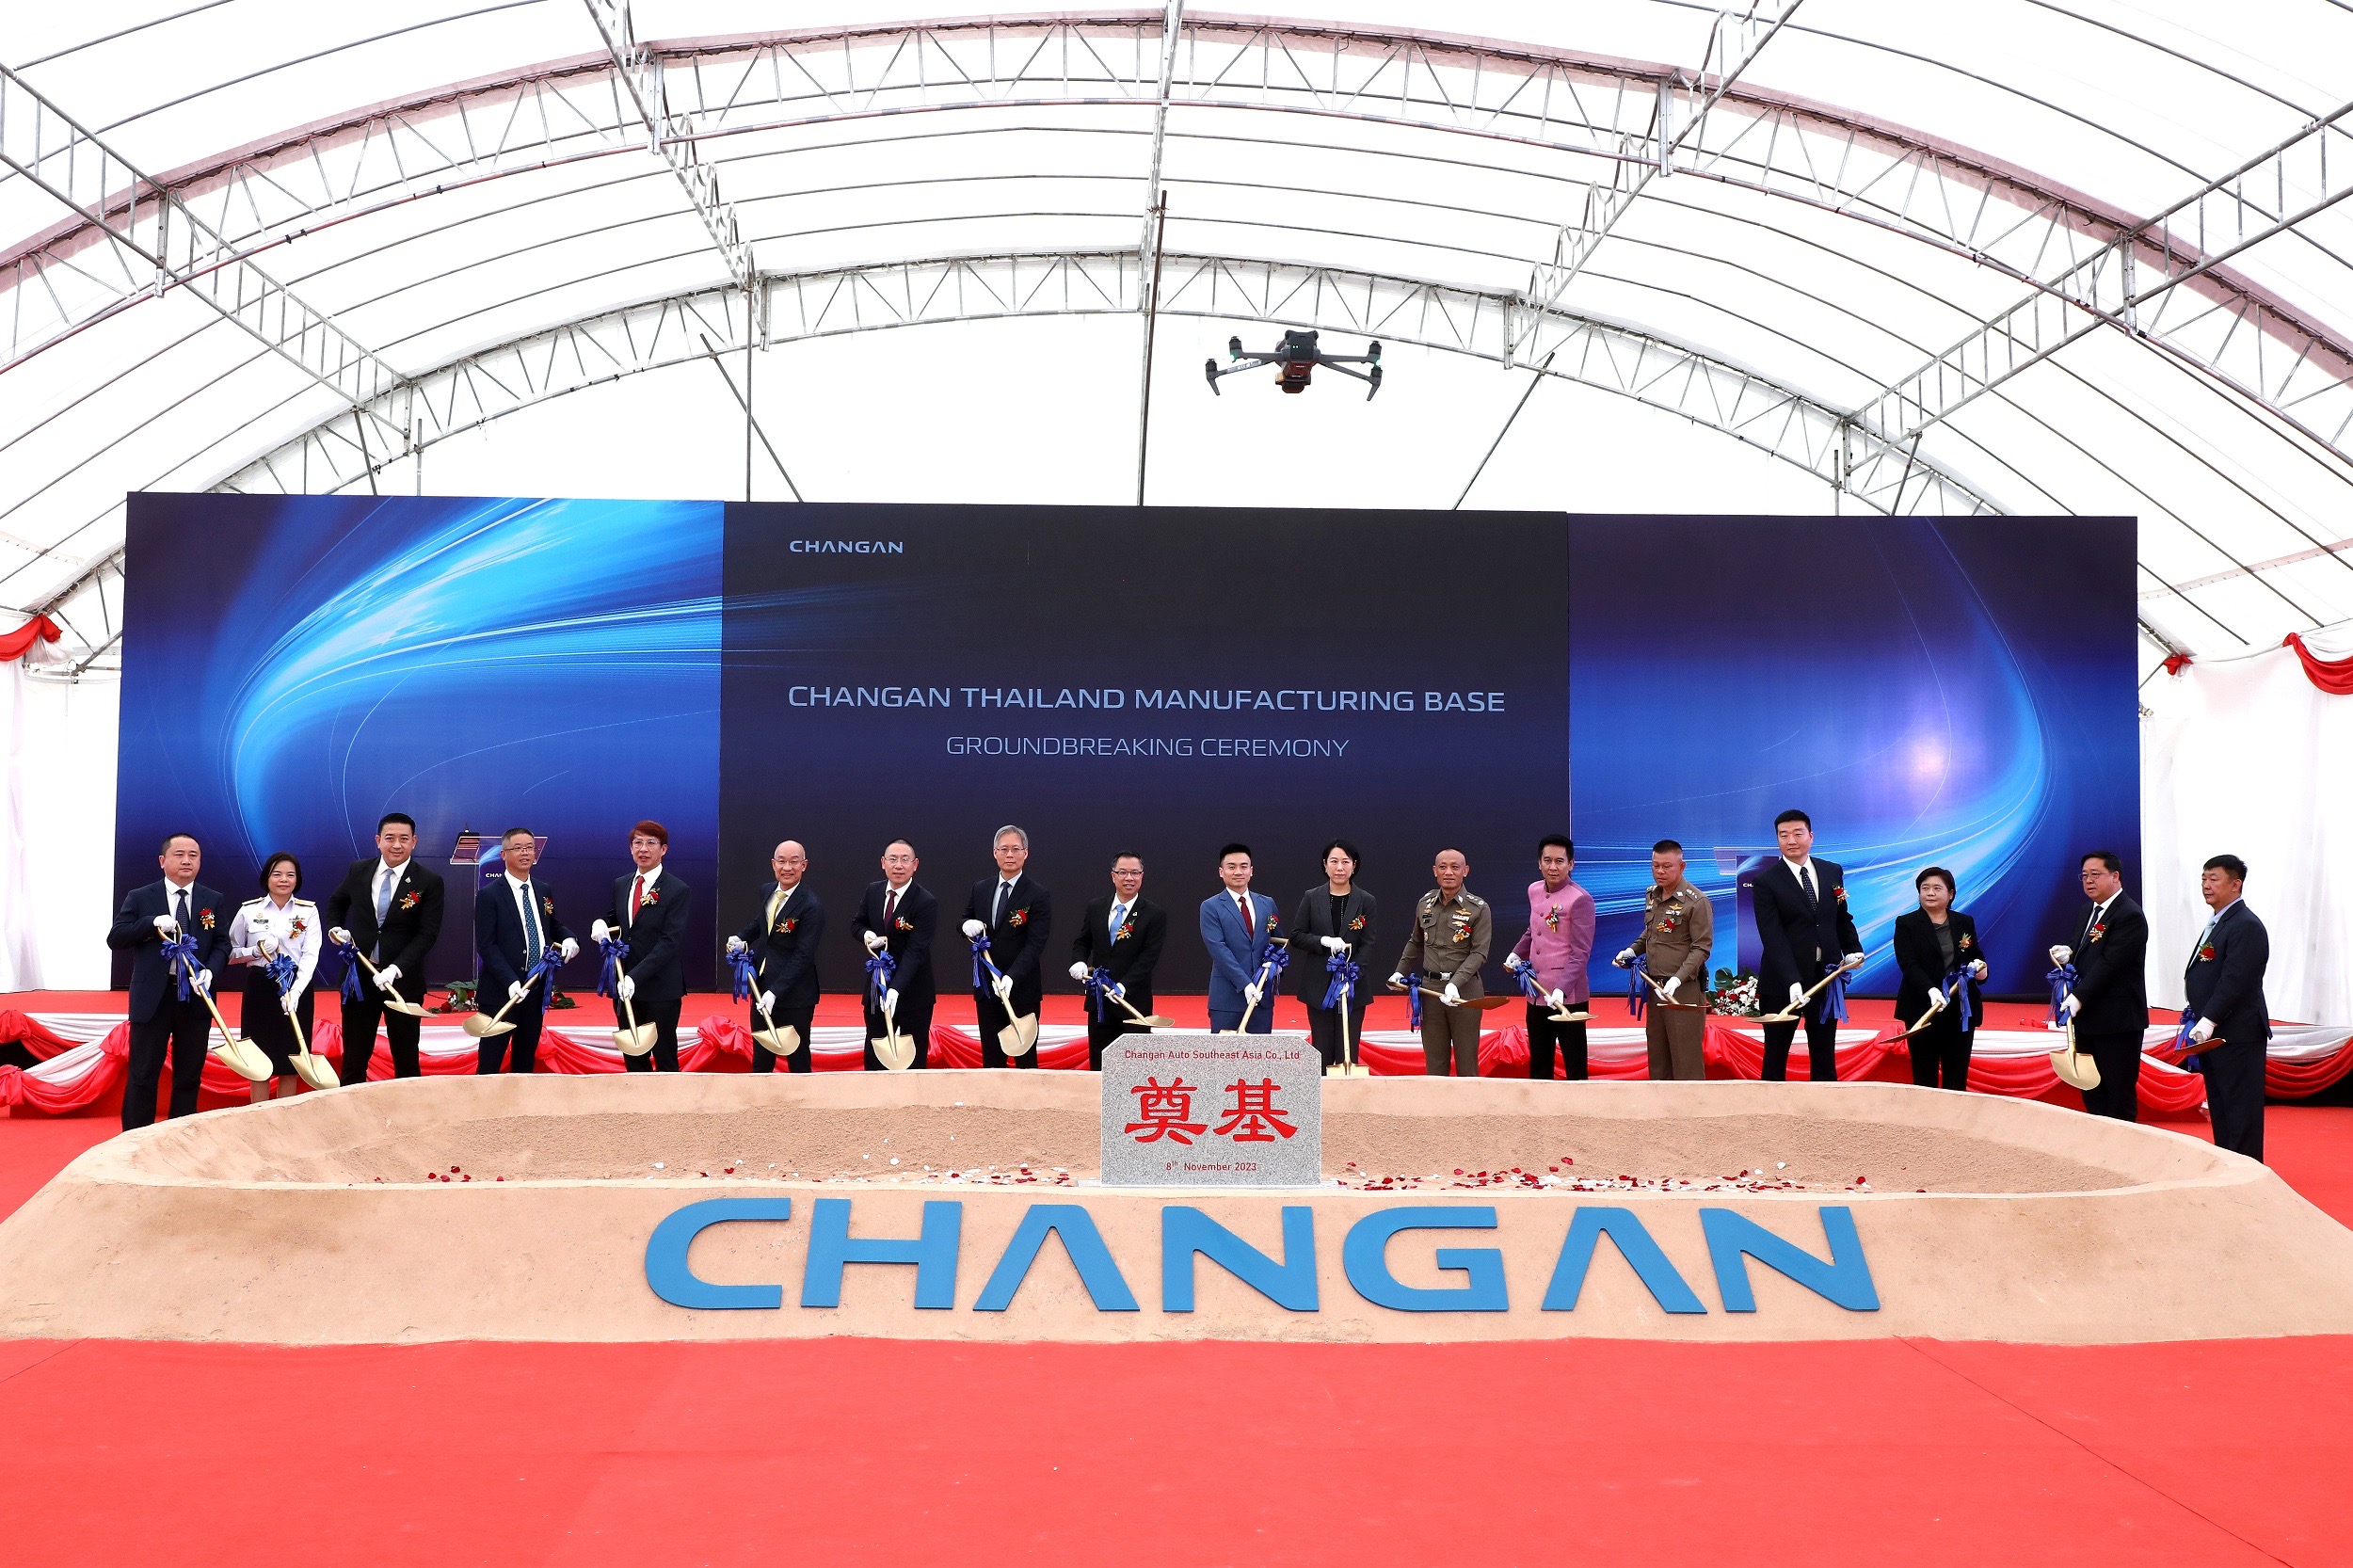 ฉางอาน ได้ฤกษ์ก่อสร้างฐานการผลิตรถยนต์ไฟฟ้า แห่งแรก นอกประเทศจีน ณ นิคมอุตสาหกรรม ดับบลิวเอชเอ อีสเทิร์นซีบอร์ด 4